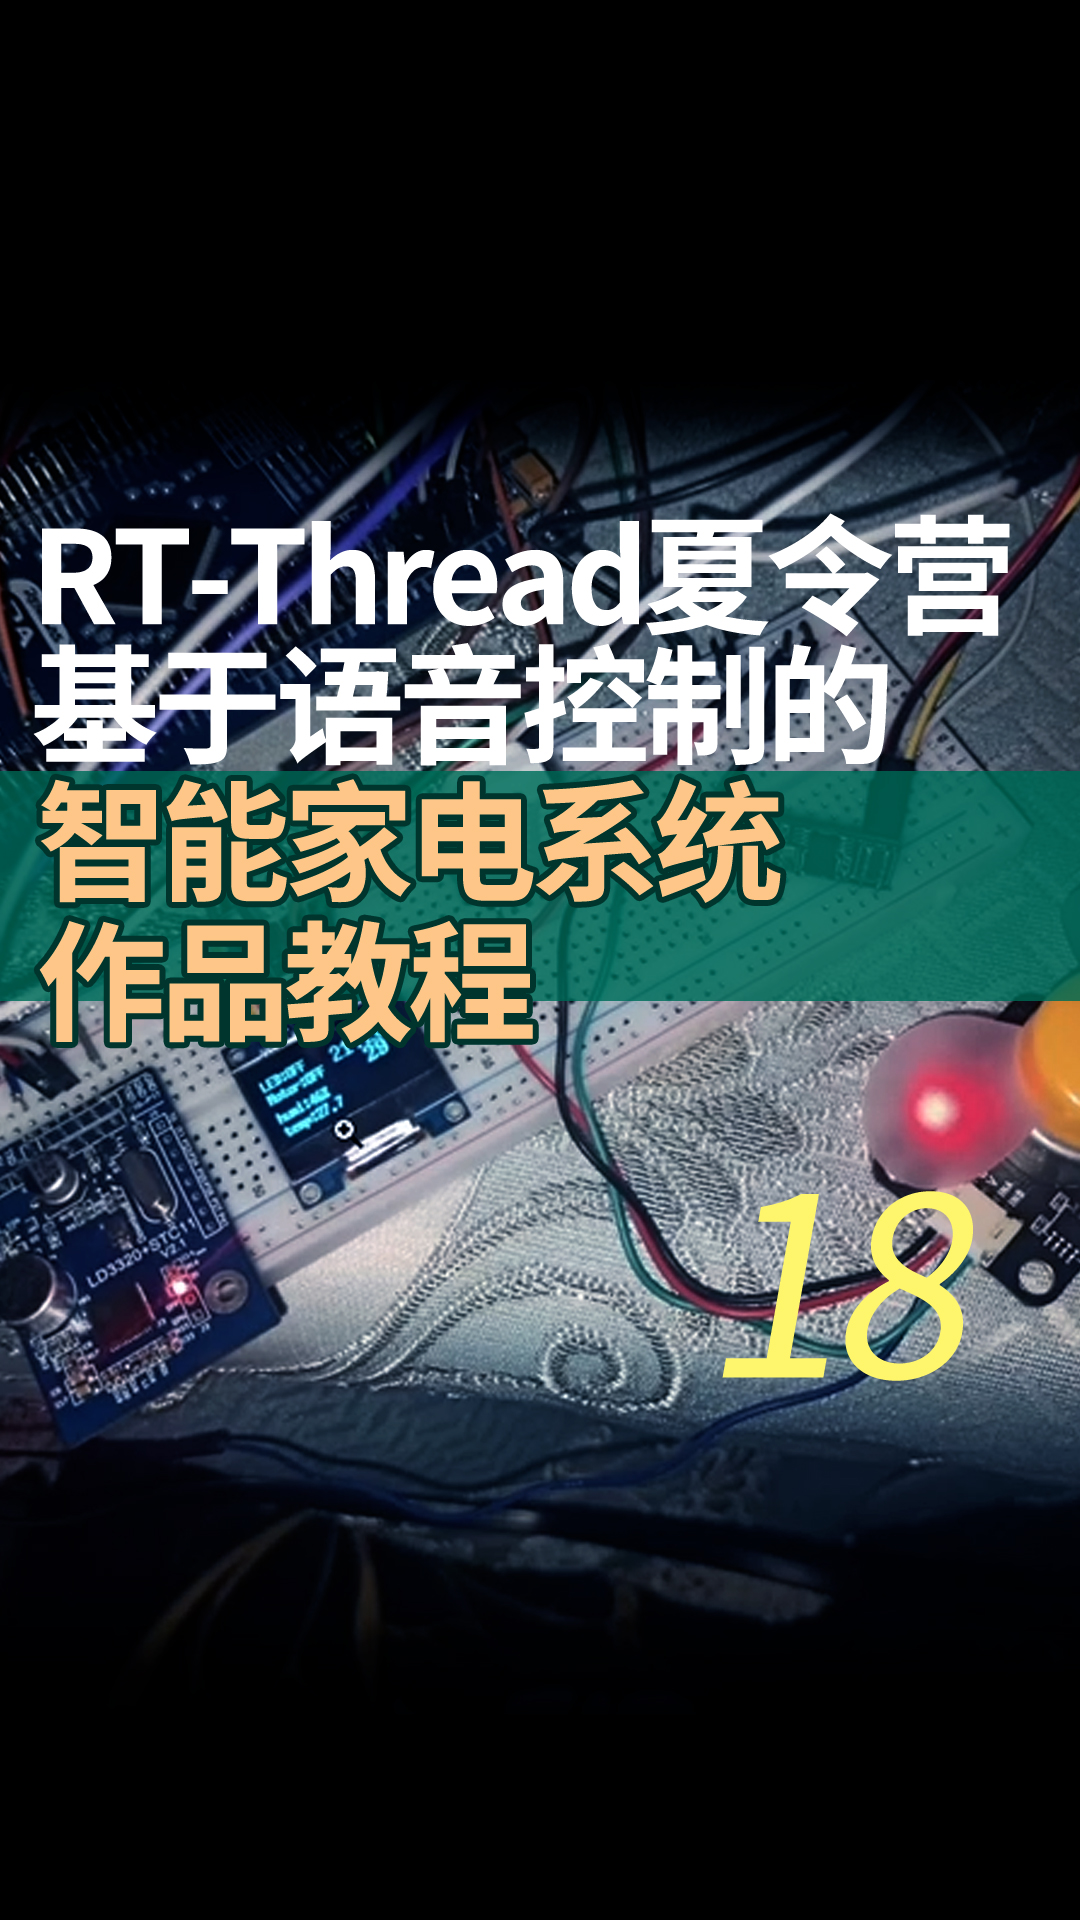 RT-Thread夏令营基于语音控制的智能家电系统作品教程18 关于夏令营的收获与学习方法推荐